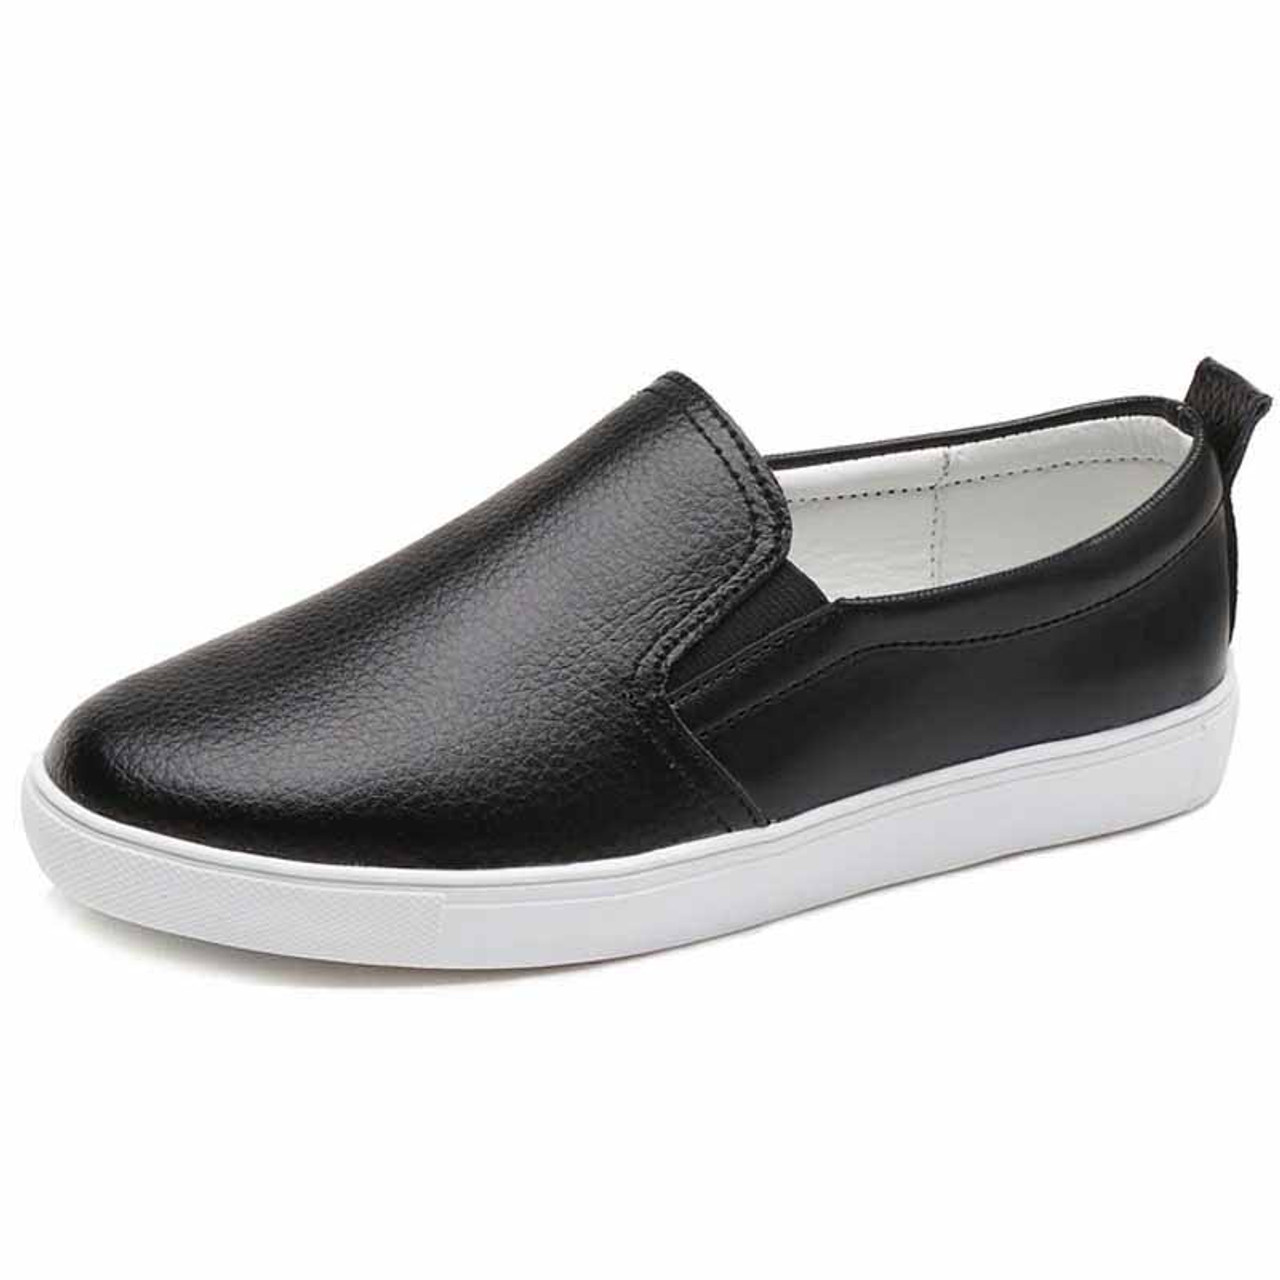 plain black slip on shoes